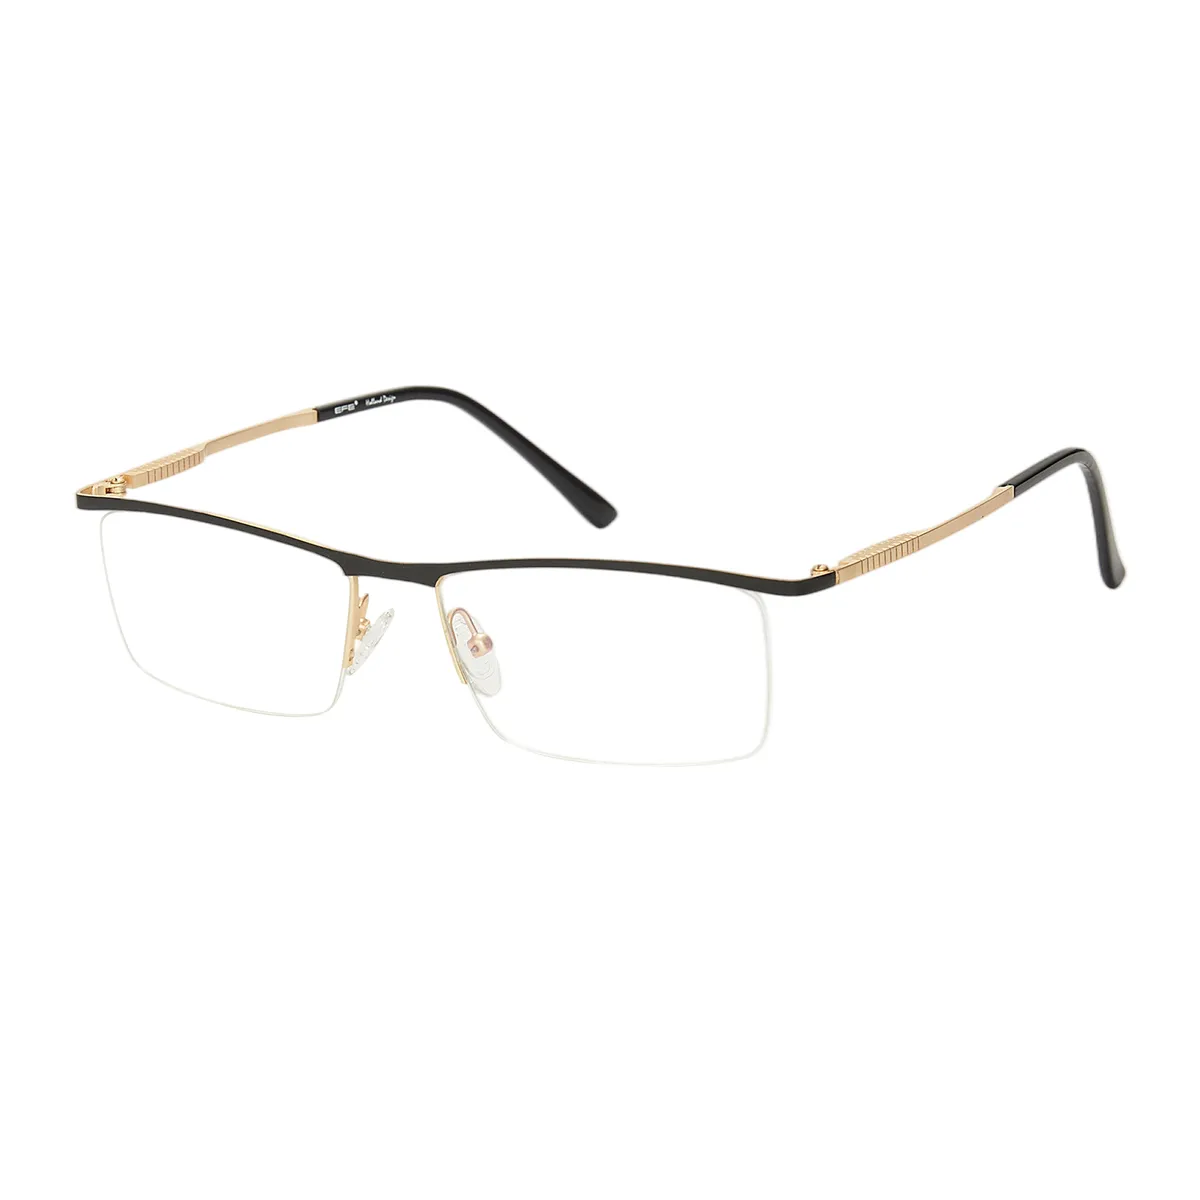 Alta - Browline Black-Gold Glasses for Men - EFE